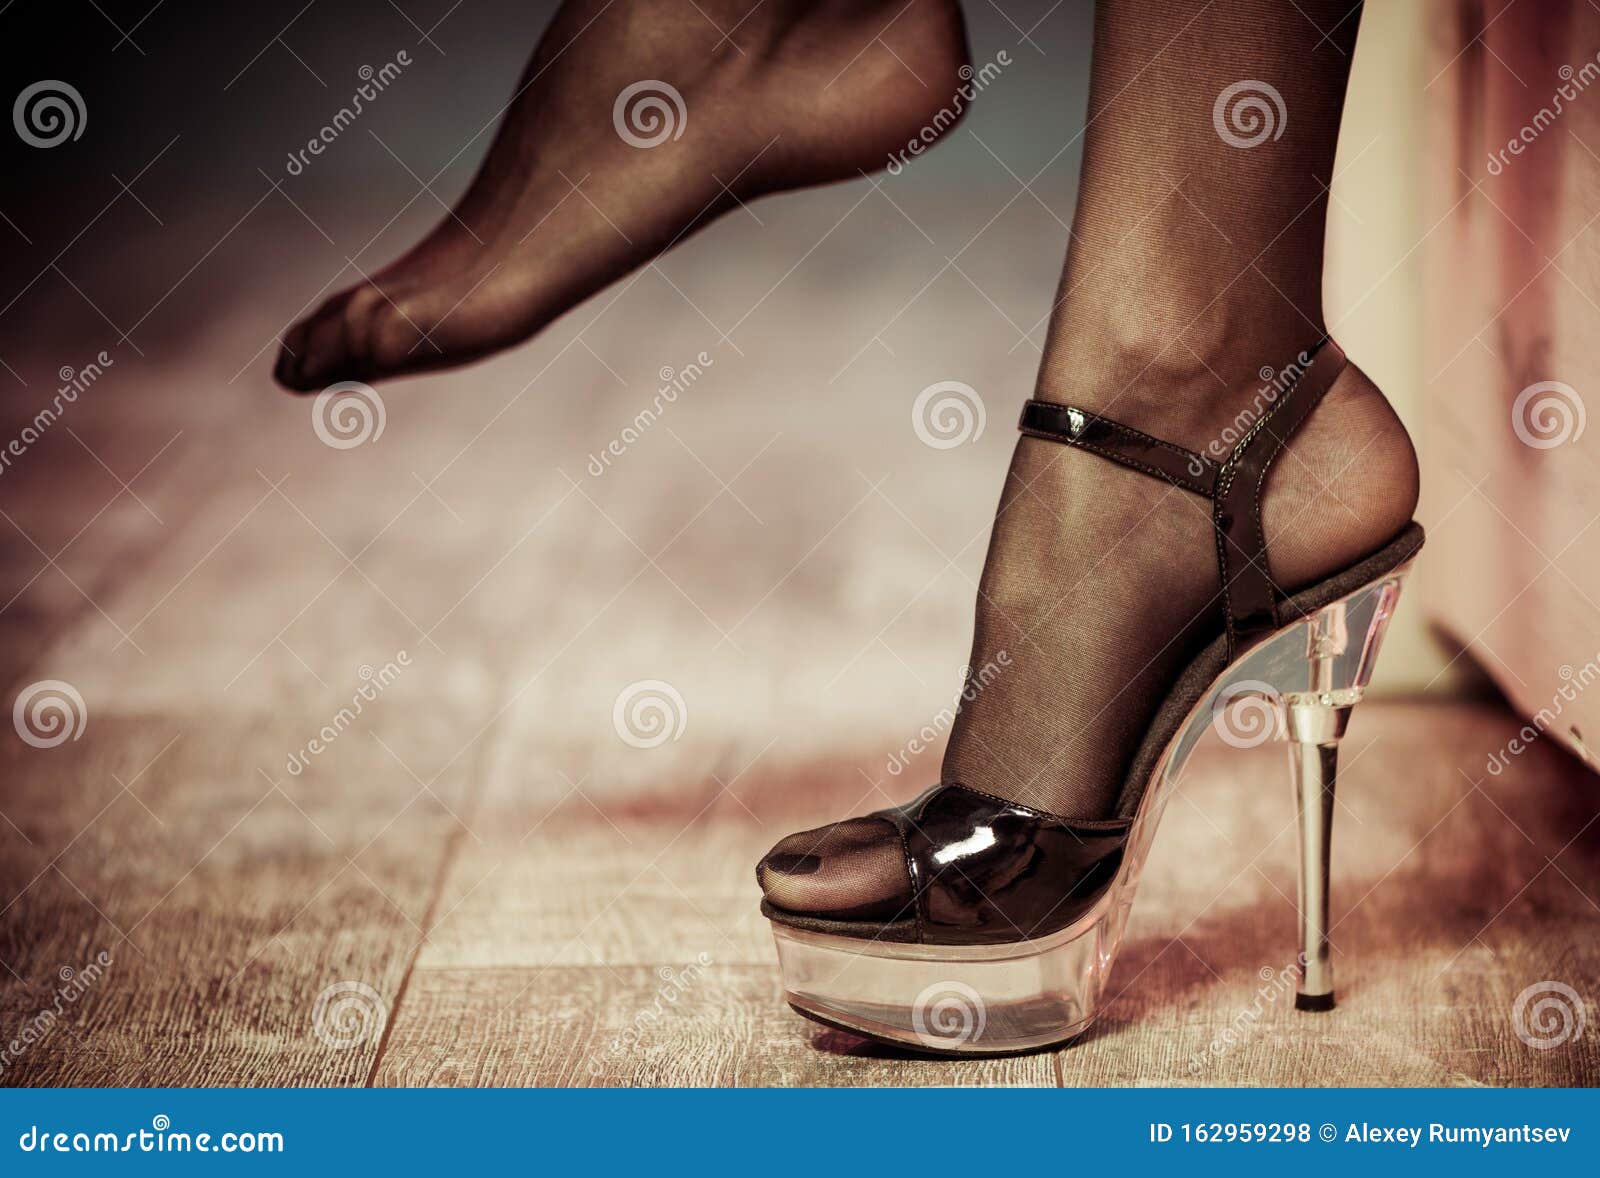 Красивые картинки «Девушки с красивыми ногами на каблуках в платье, в юбке и белье»